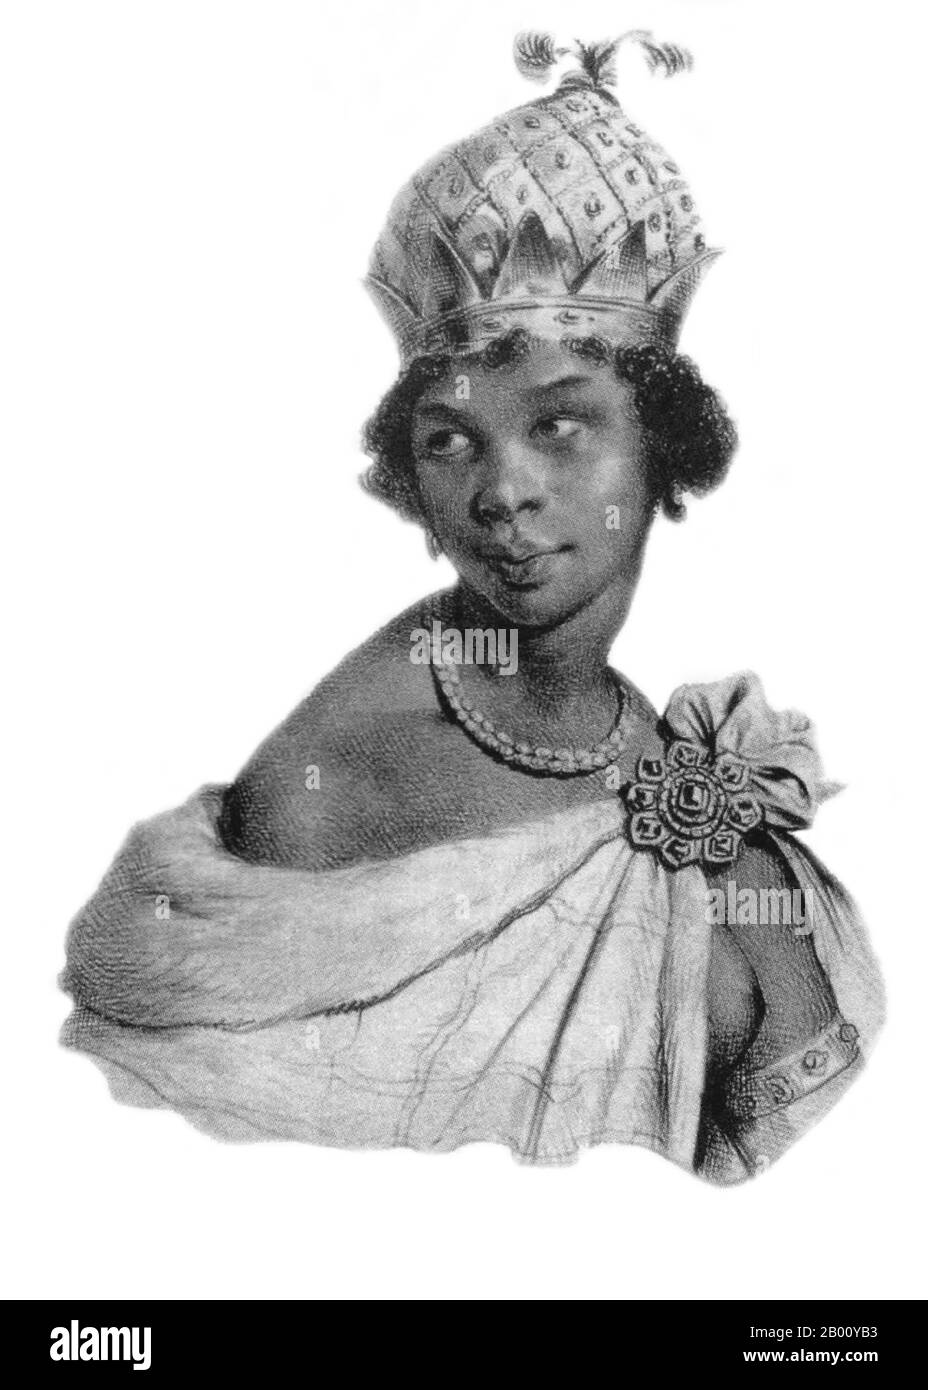 Angola: Nzinga Mbande (c. 1583 – 17. Dezember 1663), Königin der Ndongo- und Matamba-Königreiche des Mbundu-Volkes im Südwesten Afrikas. Lithographie von Francois Le Villain (fl. 1800-1830s), c. 1800. Königin Njinga regierte in Matamba von 1631 bis zu ihrem Tod im Jahr 1663. Während dieser Zeit integrierte sie das Land in ihre Domänen und Tausende ihrer ehemaligen Untertanen, die vor portugiesischen Angriffen mit ihr geflohen waren, siedelten sich dort an. Sie führte mehrere Kriege gegen Kasanje, insbesondere in den Jahren 1634-1635. 1639 erhielt sie eine portugiesische Friedensmission, die keinen Vertrag erreichte, aber die Beziehungen wieder aufnahm. Stockfoto